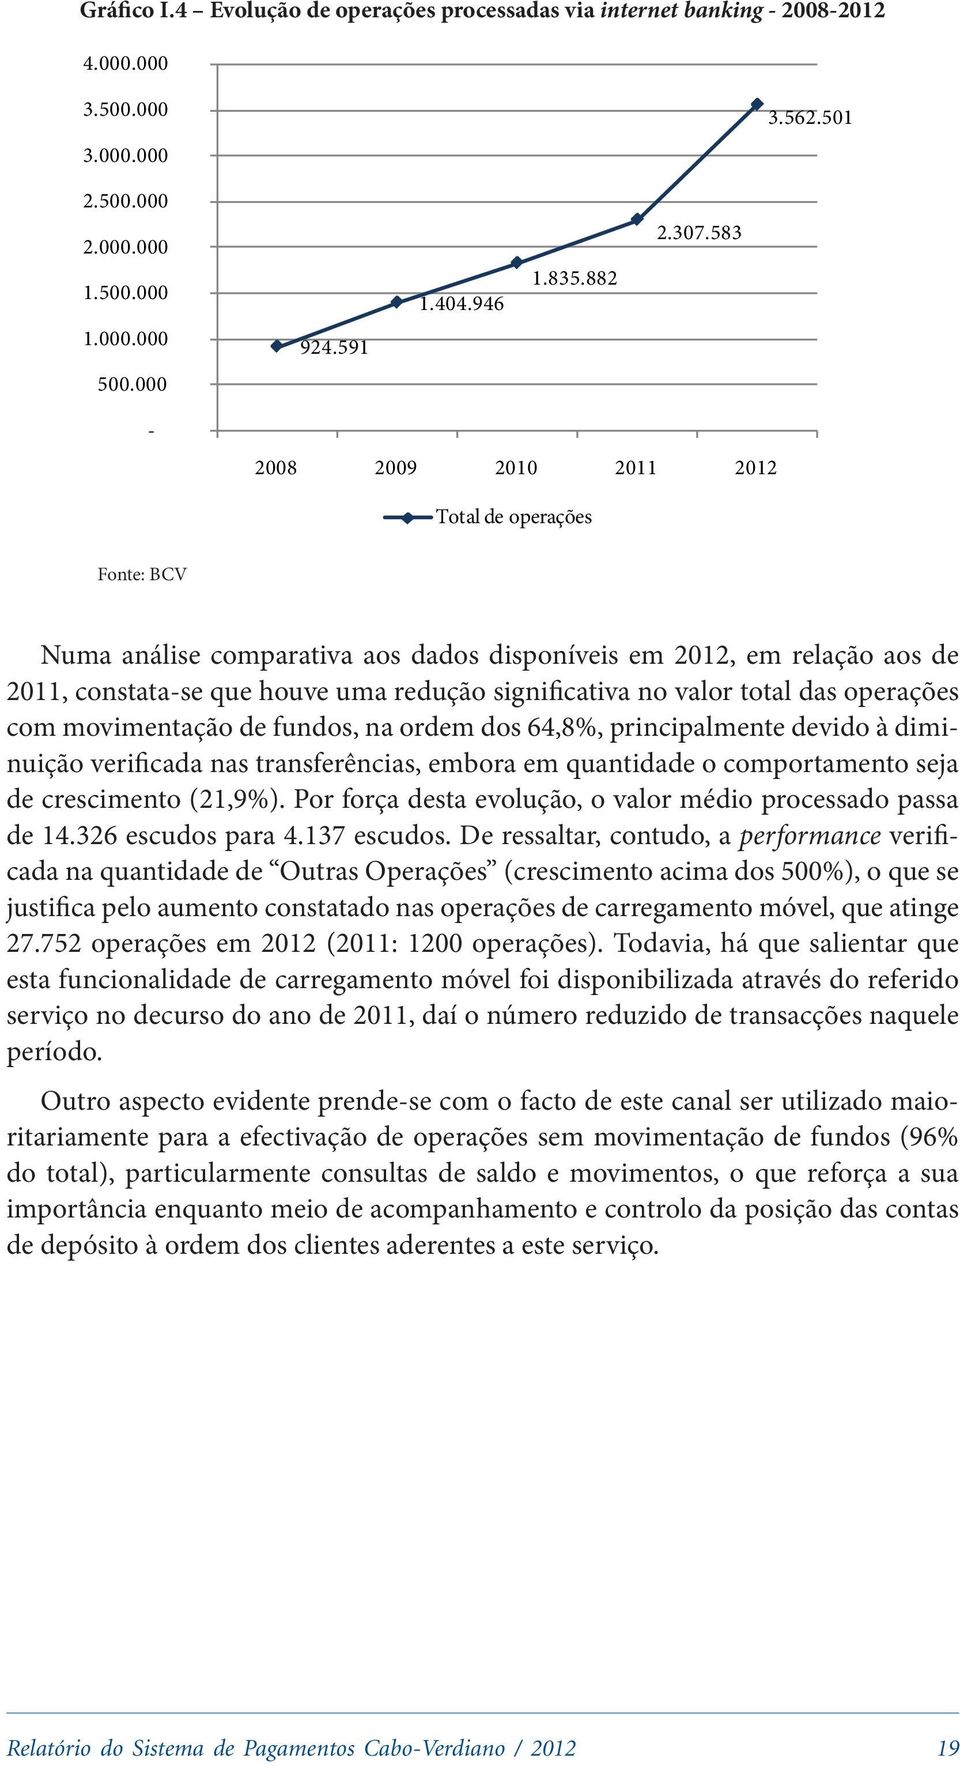 000-2008 2009 2010 2011 2012 Total de operações Fonte: BCV Numa análise comparativa aos dados disponíveis em 2012, em relação aos de 2011, constata-se que houve uma redução significativa no valor